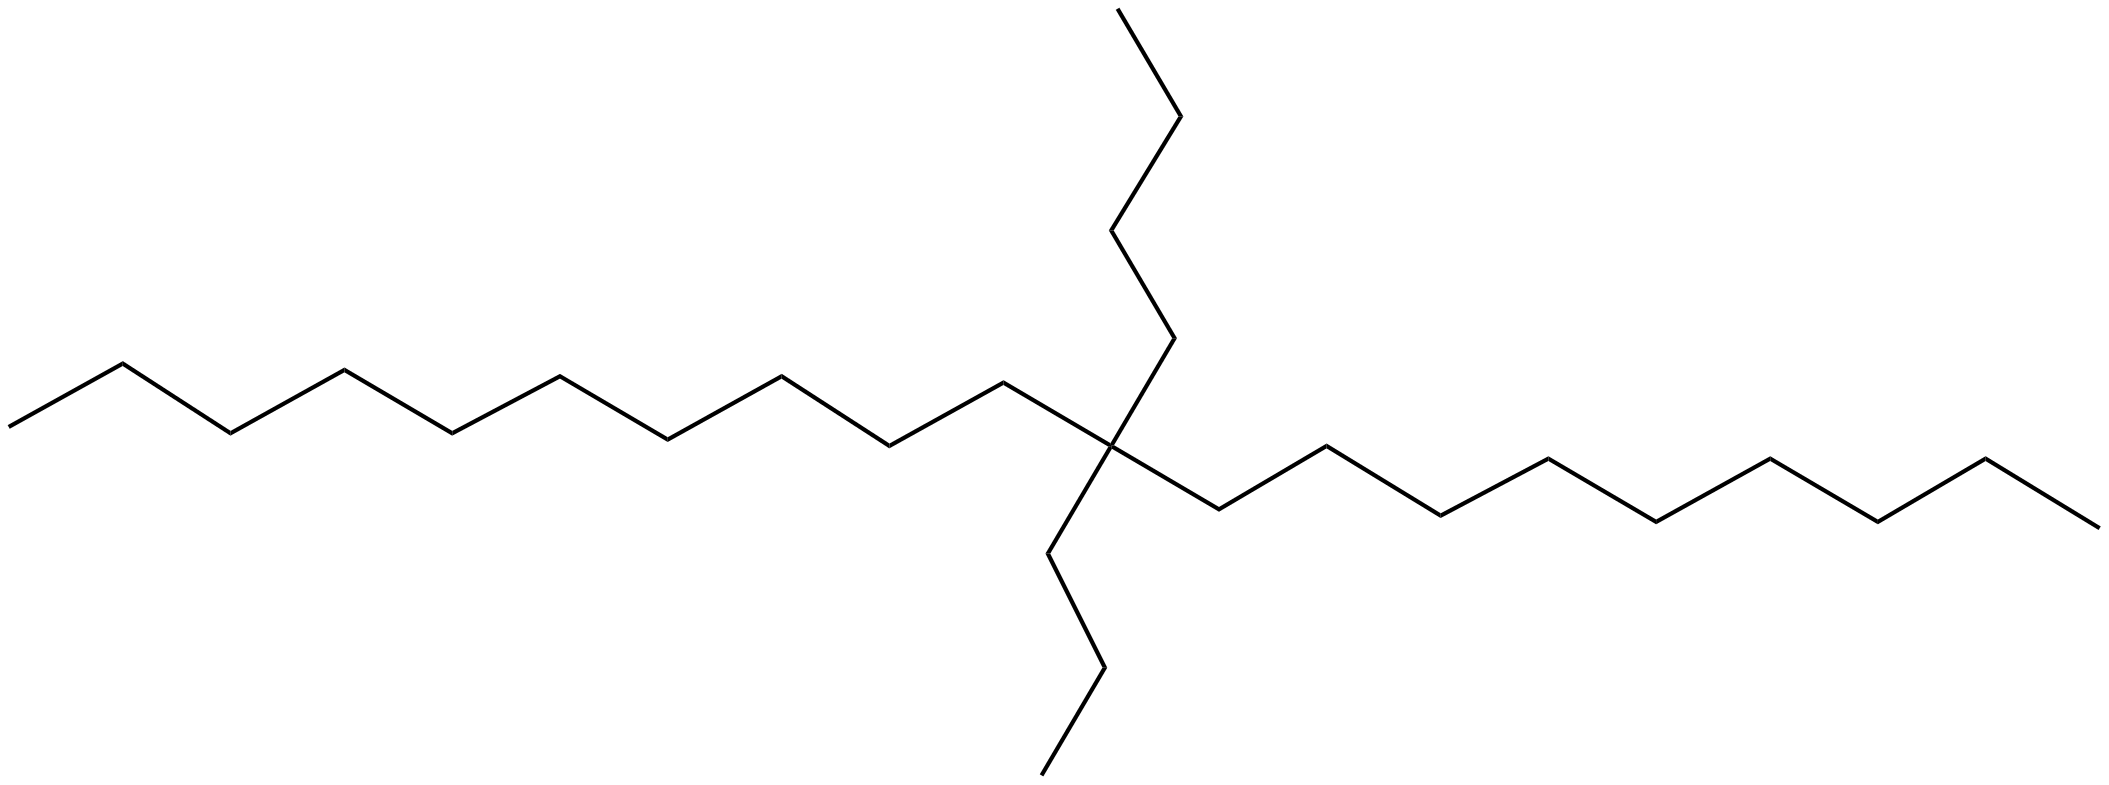 Image of eicosane, 10-butyl-10-propyl-